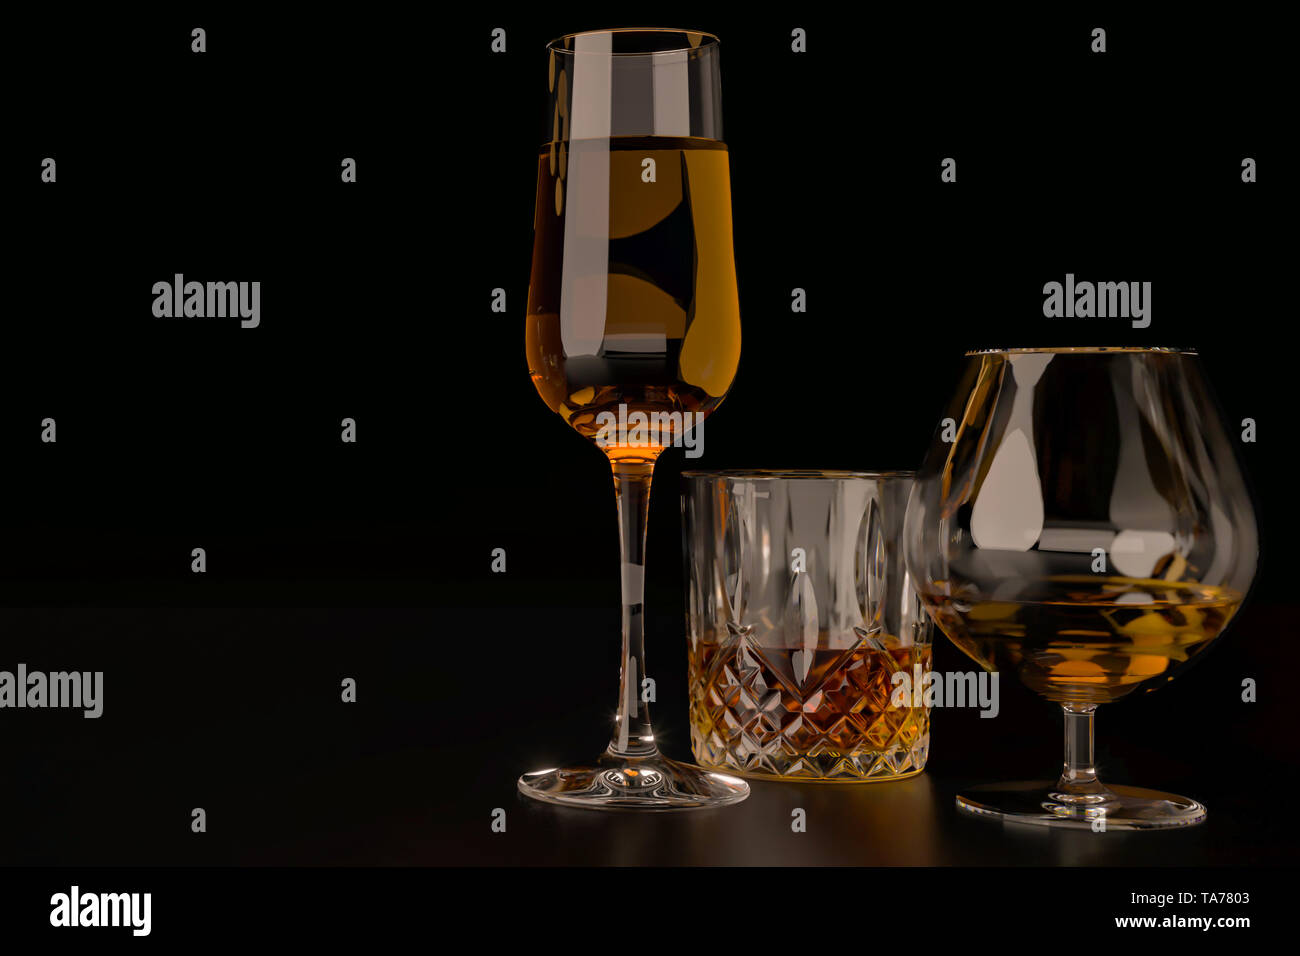 Des boissons alcoolisées, des verres et des verres, en présence de whisky, vodka, rhum, tequila, brandy, cognac. sur dark old fond avec selectiv Banque D'Images